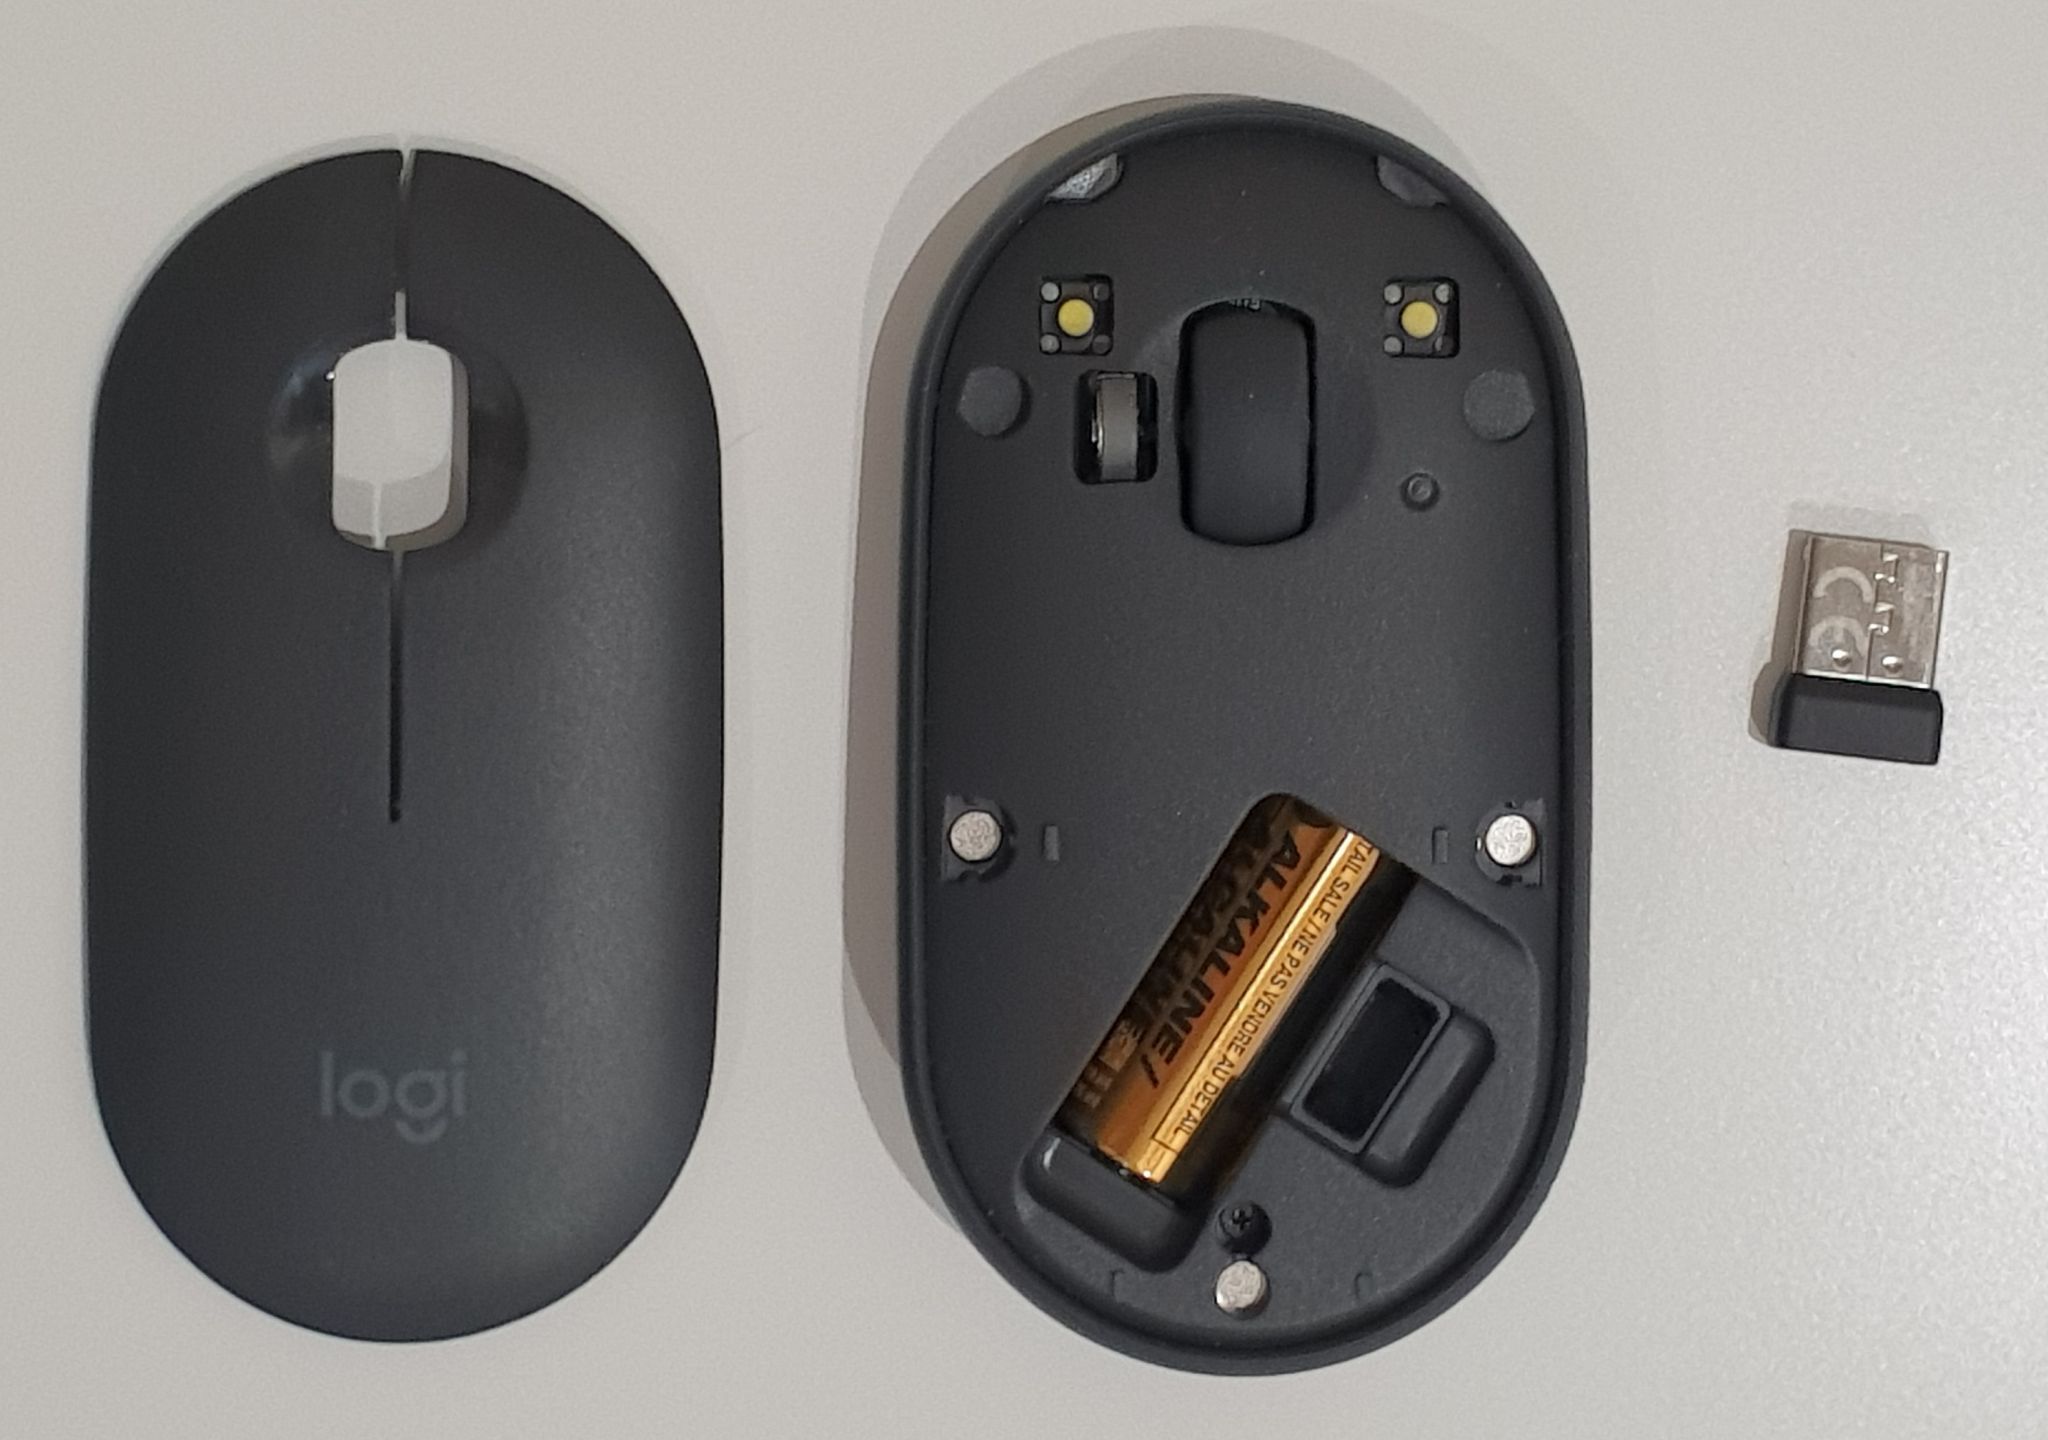 Беспроводная мышь m350 pebble. Мышка Logitech Pebble m350. Logitech Pebble m350. Logitech Pebble m350 Wireless Mouse Graphite. Мышь Logitech Pebble m350, оптическая, беспроводная, USB, графитовый [910-005718].